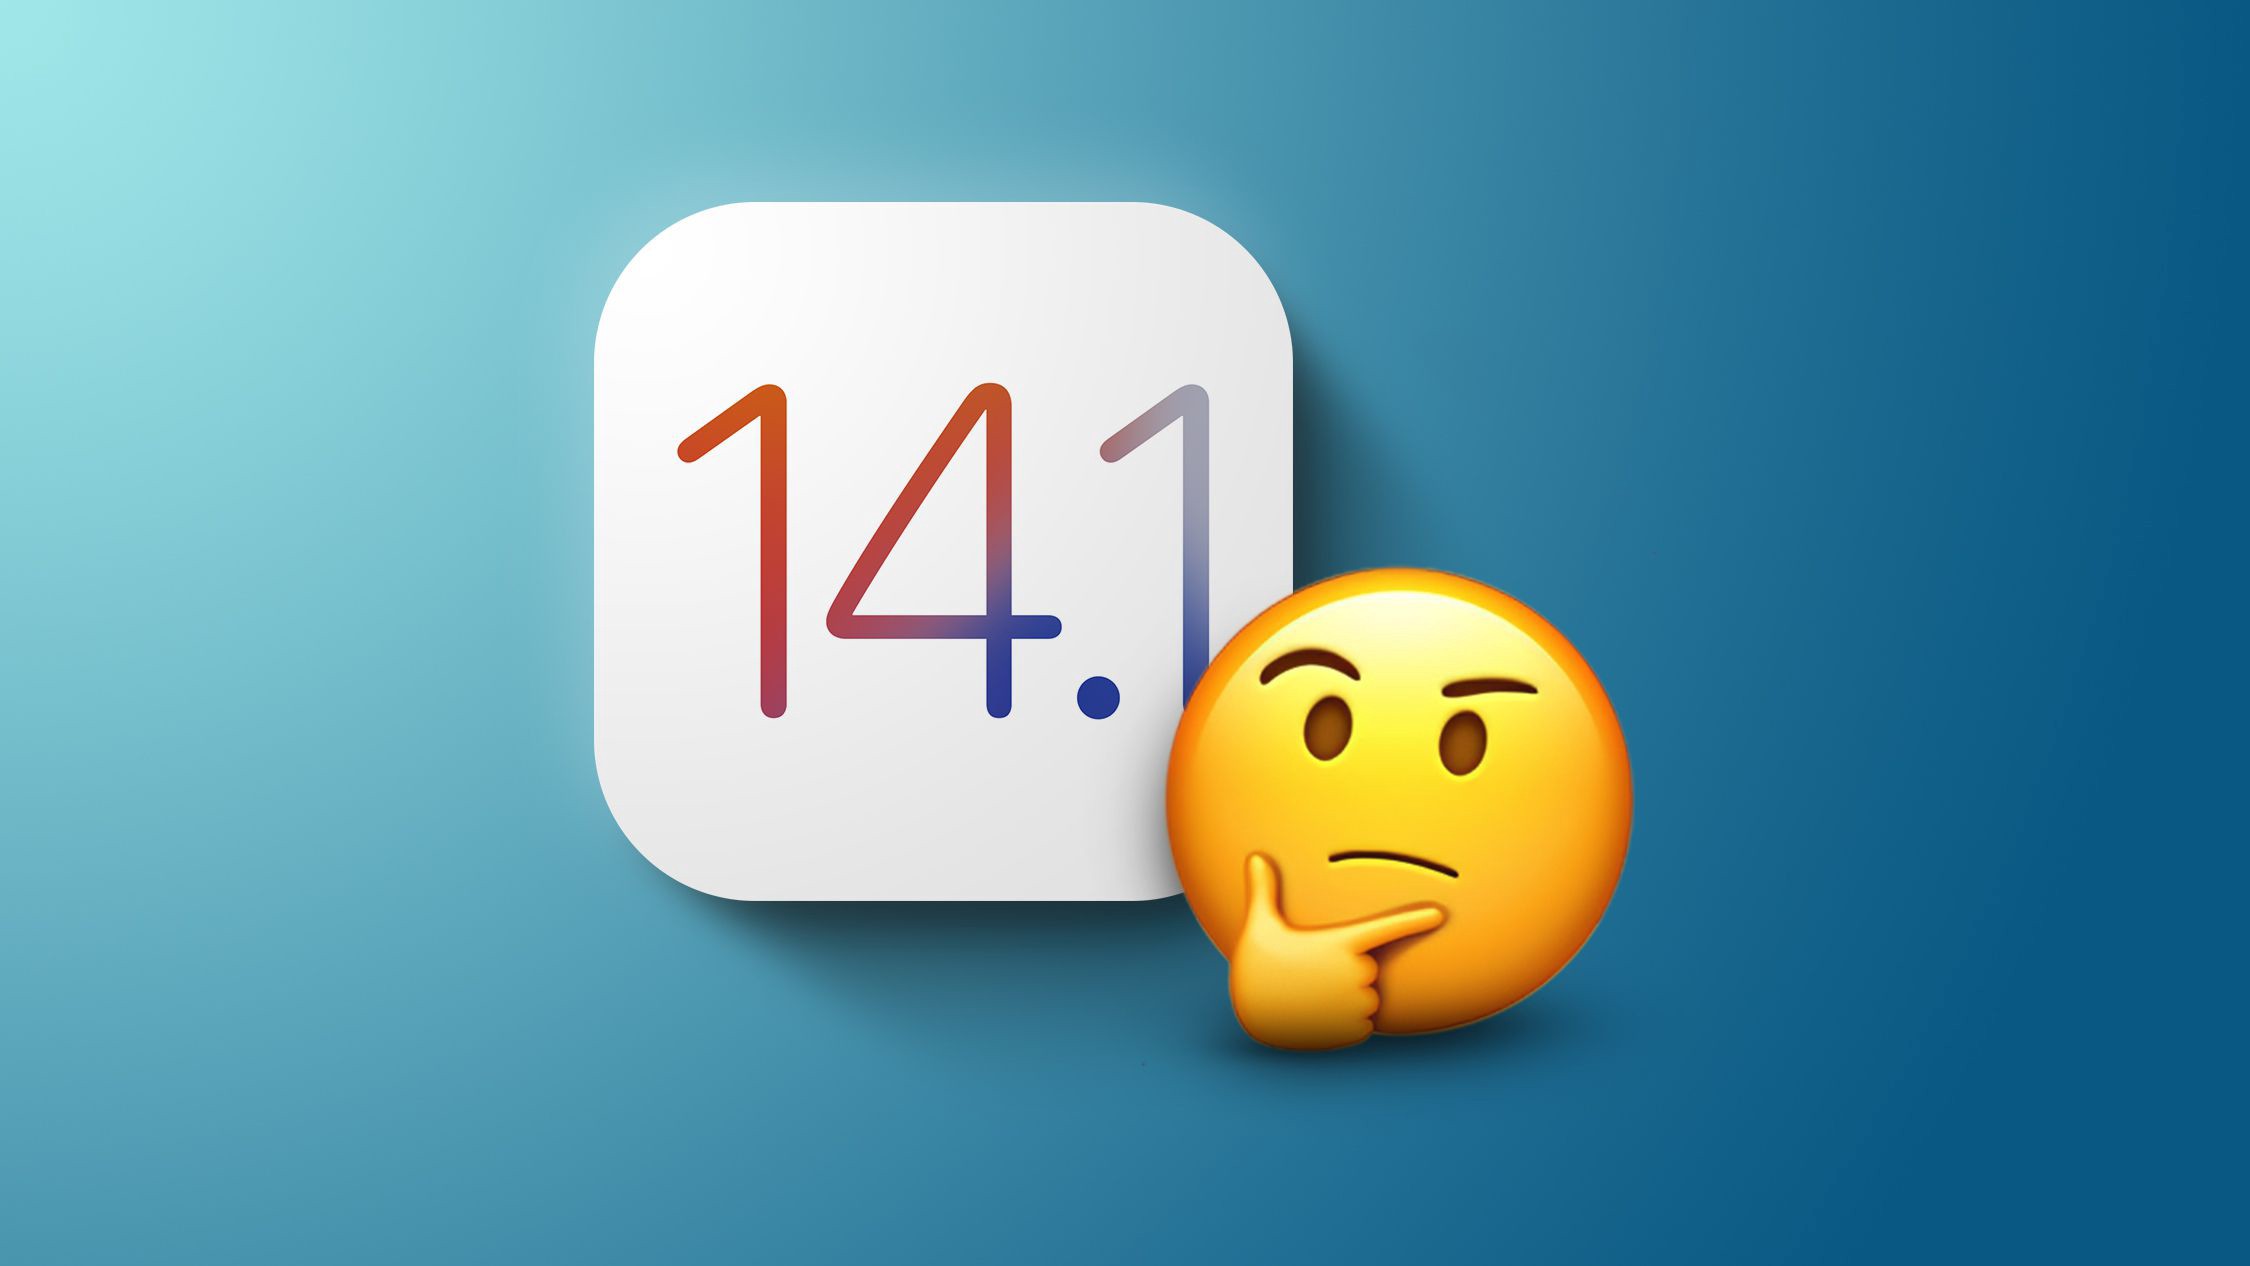 Apple выпустила iOS 14.1, iPadOS 14.1 и tvOS 14.1